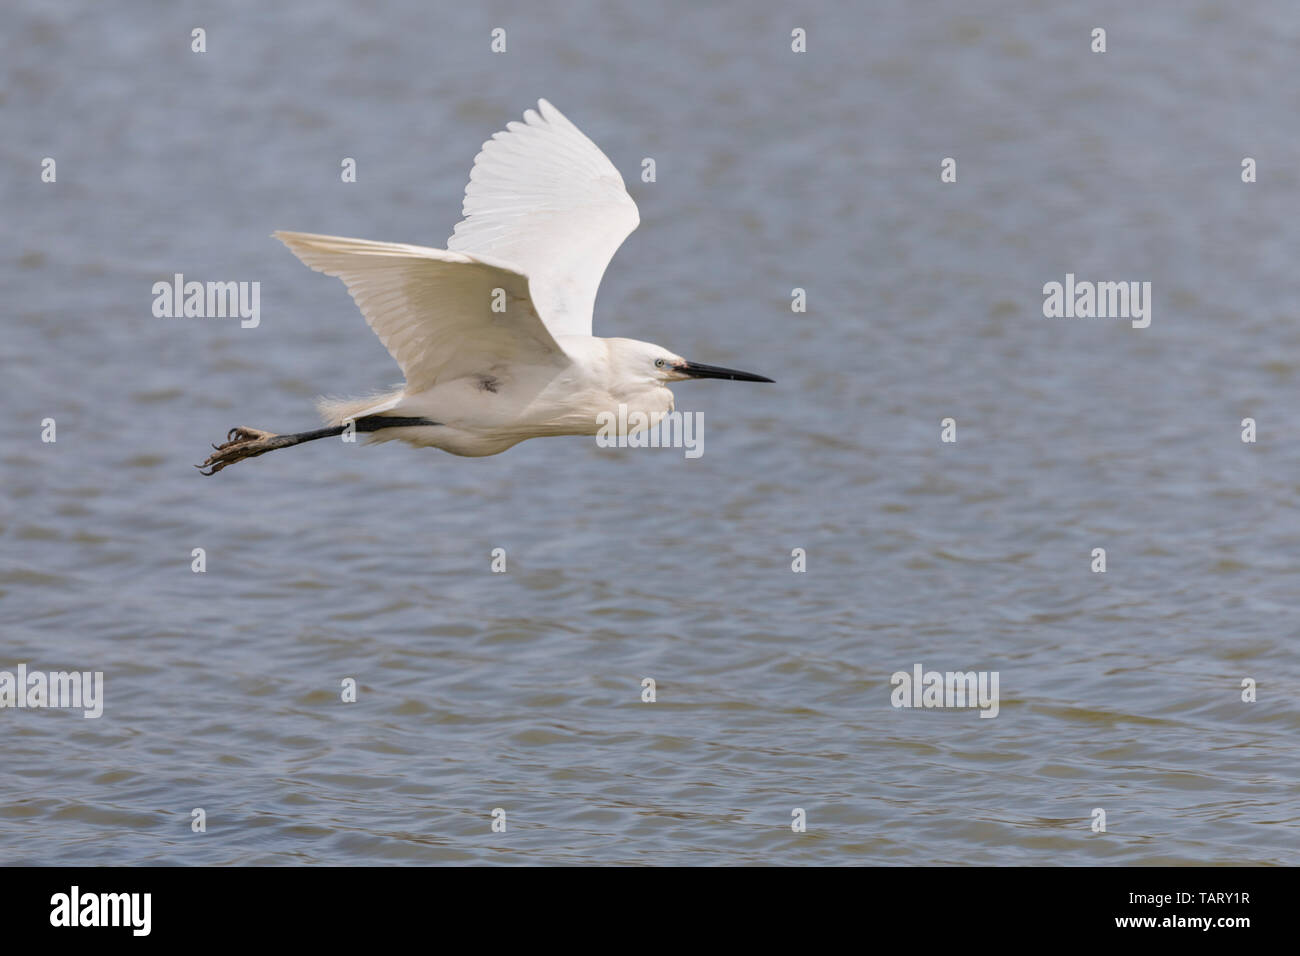 Little egret, egretta garzetta, white bird flying in Camargue, France. Stock Photo